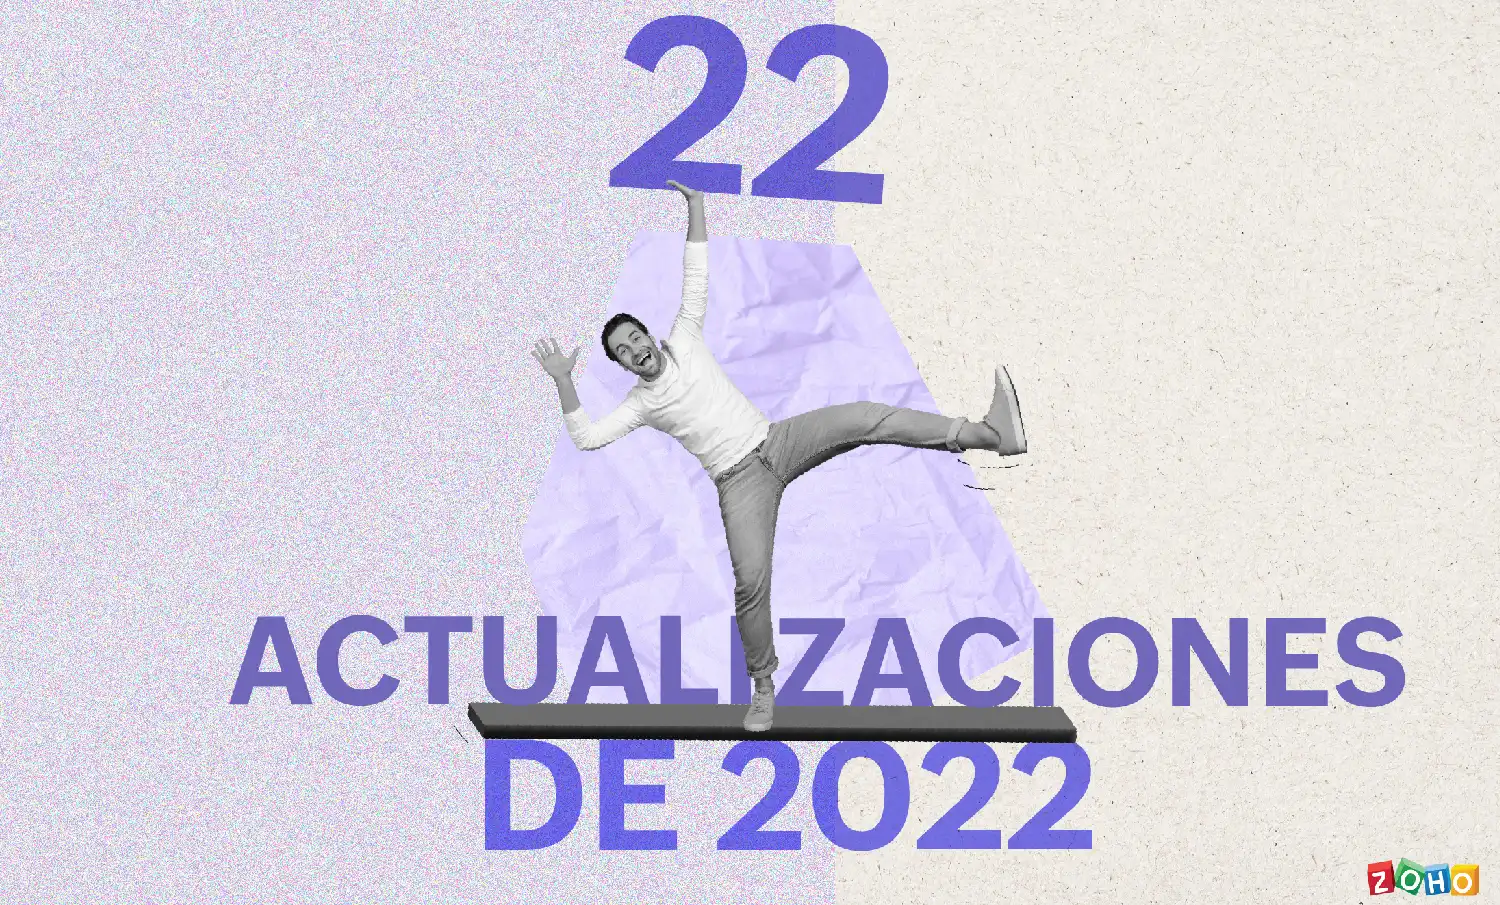 2022: 22 actualizaciones de Zoho que marcaron el año